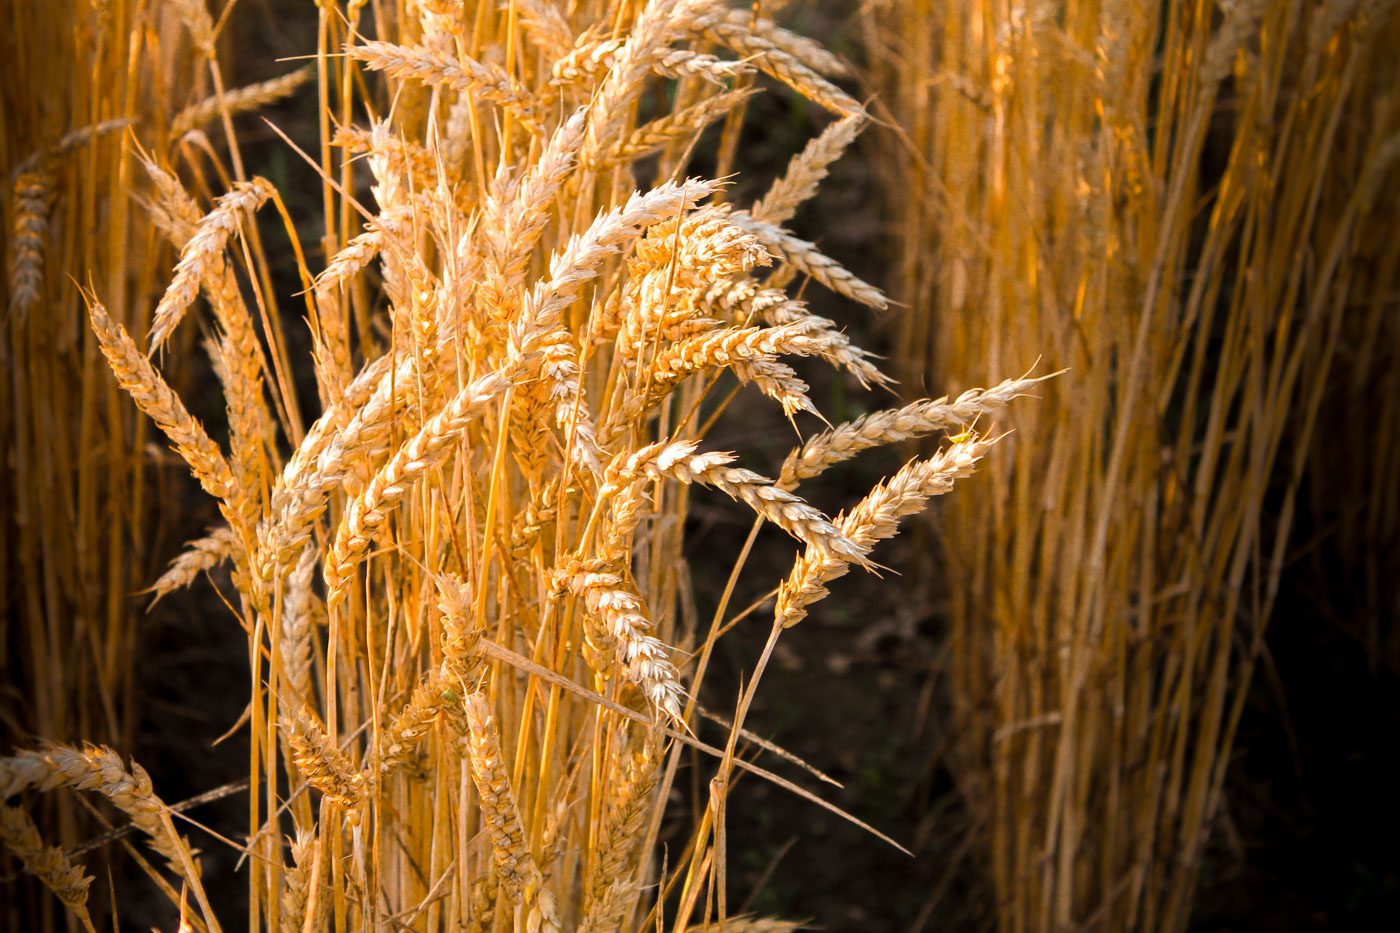 golden stalks of wheat growing in a field